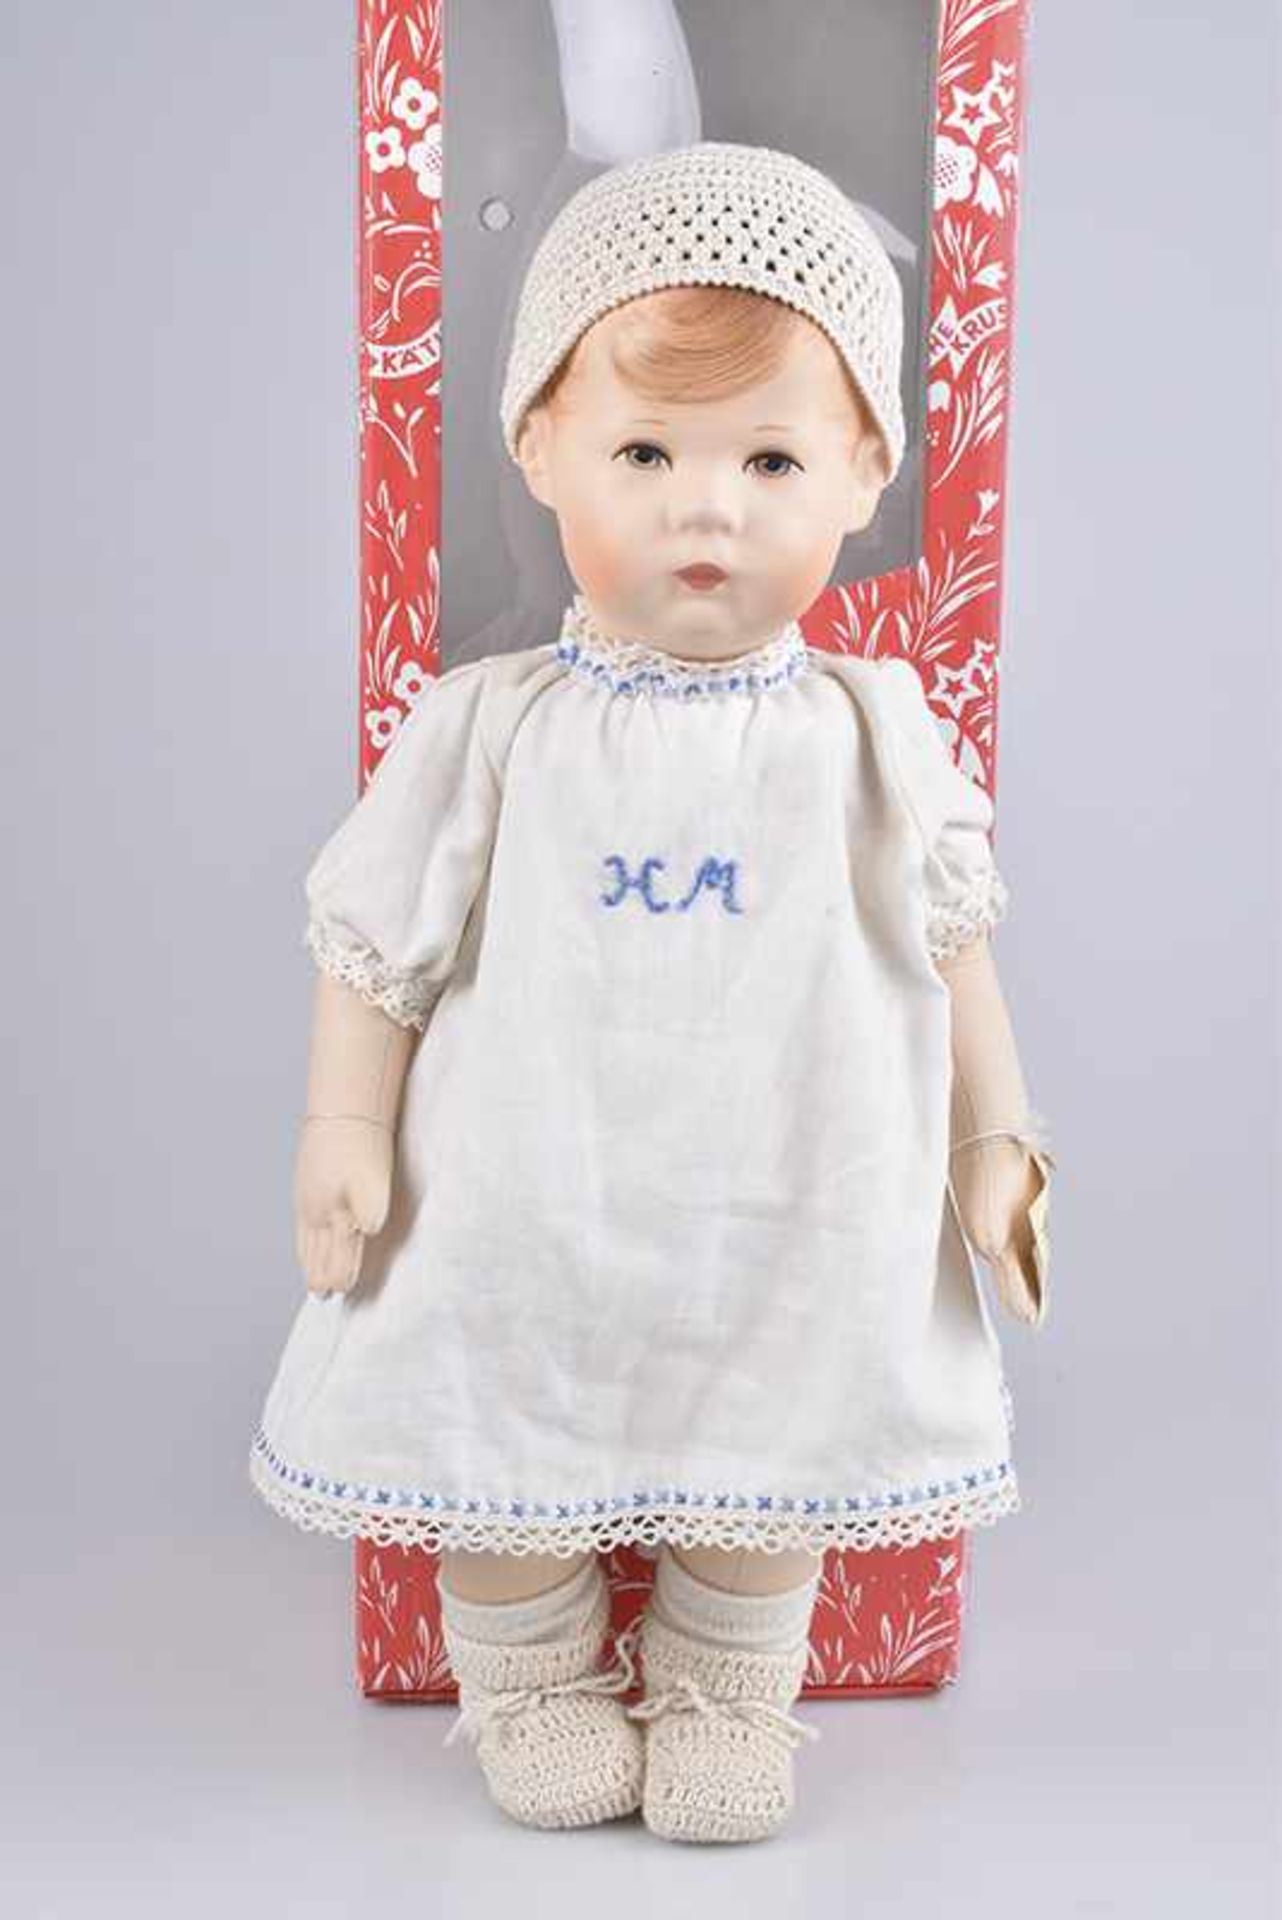 KÄTHE KRUSE Puppe "Hemdenmatz", Replika der Puppe Nr. 1, mit Froschhand, limitierte Auflage, Fuß